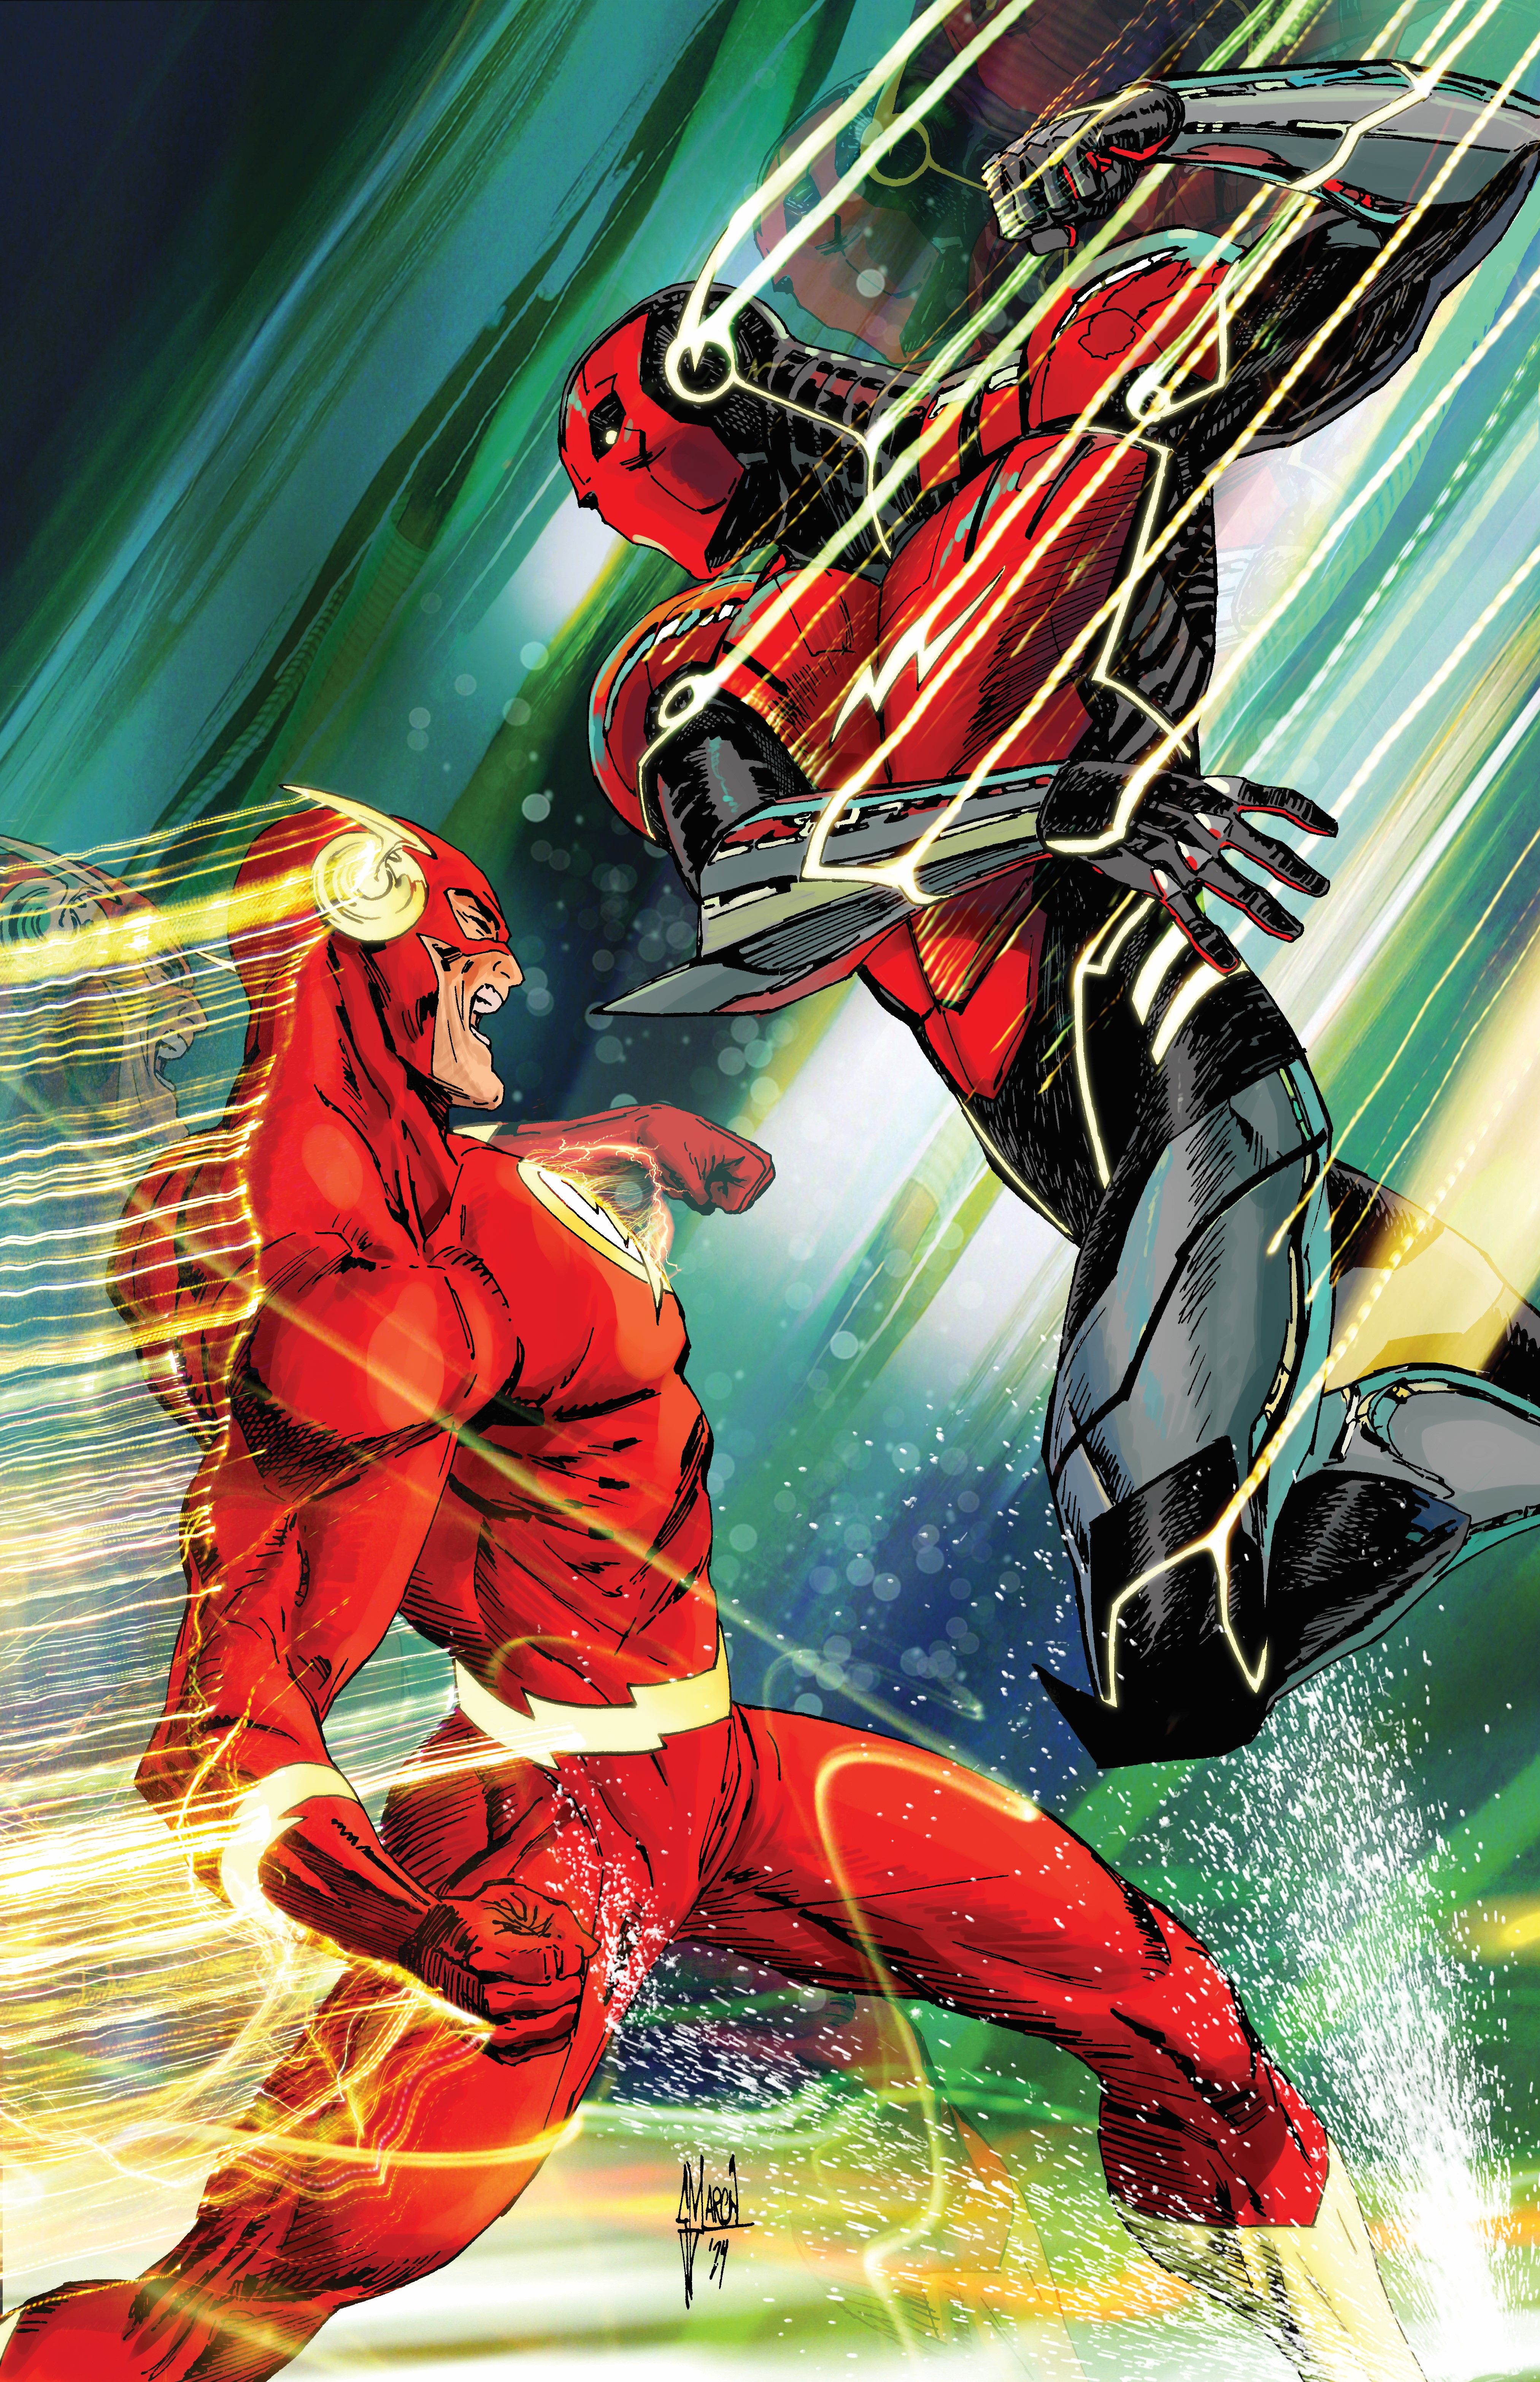 Capa da variante de março do Absolute Power 4: o Flash luta contra um Amazo.